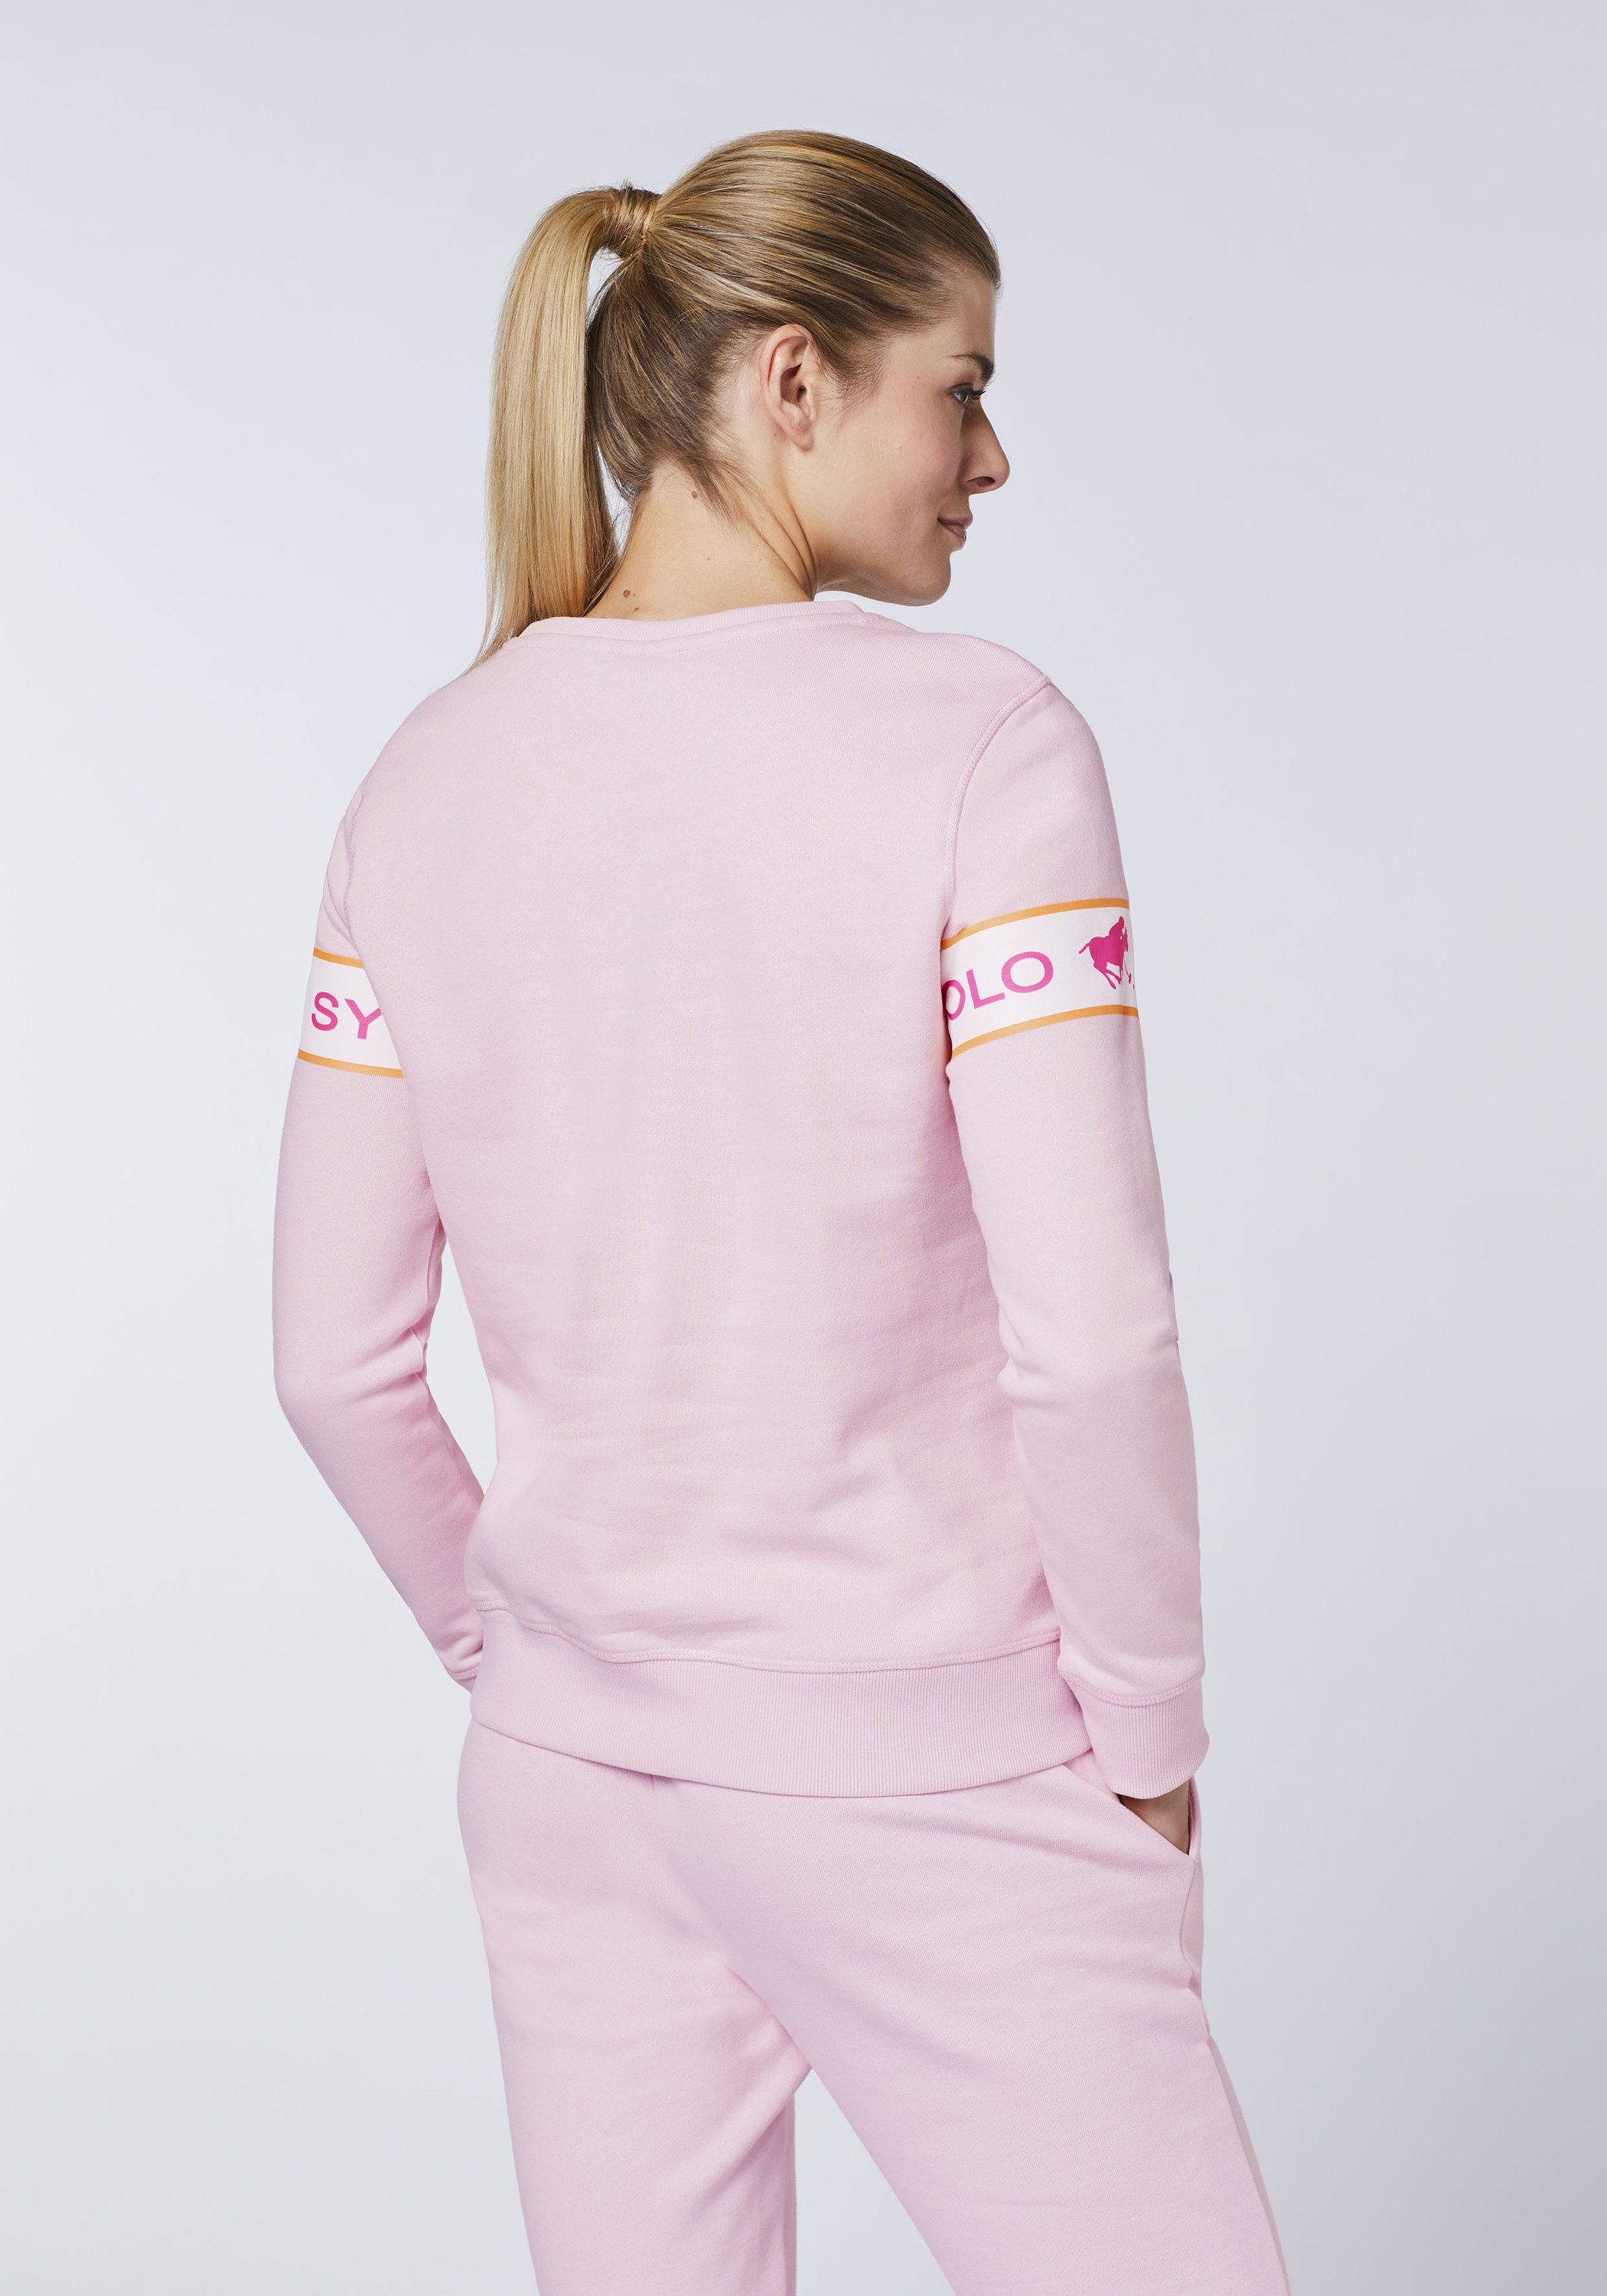 Polo Sylt Sweatshirt Logo-Kontraststreifen mit 13-2806 Pink Lady eingearbeitetem